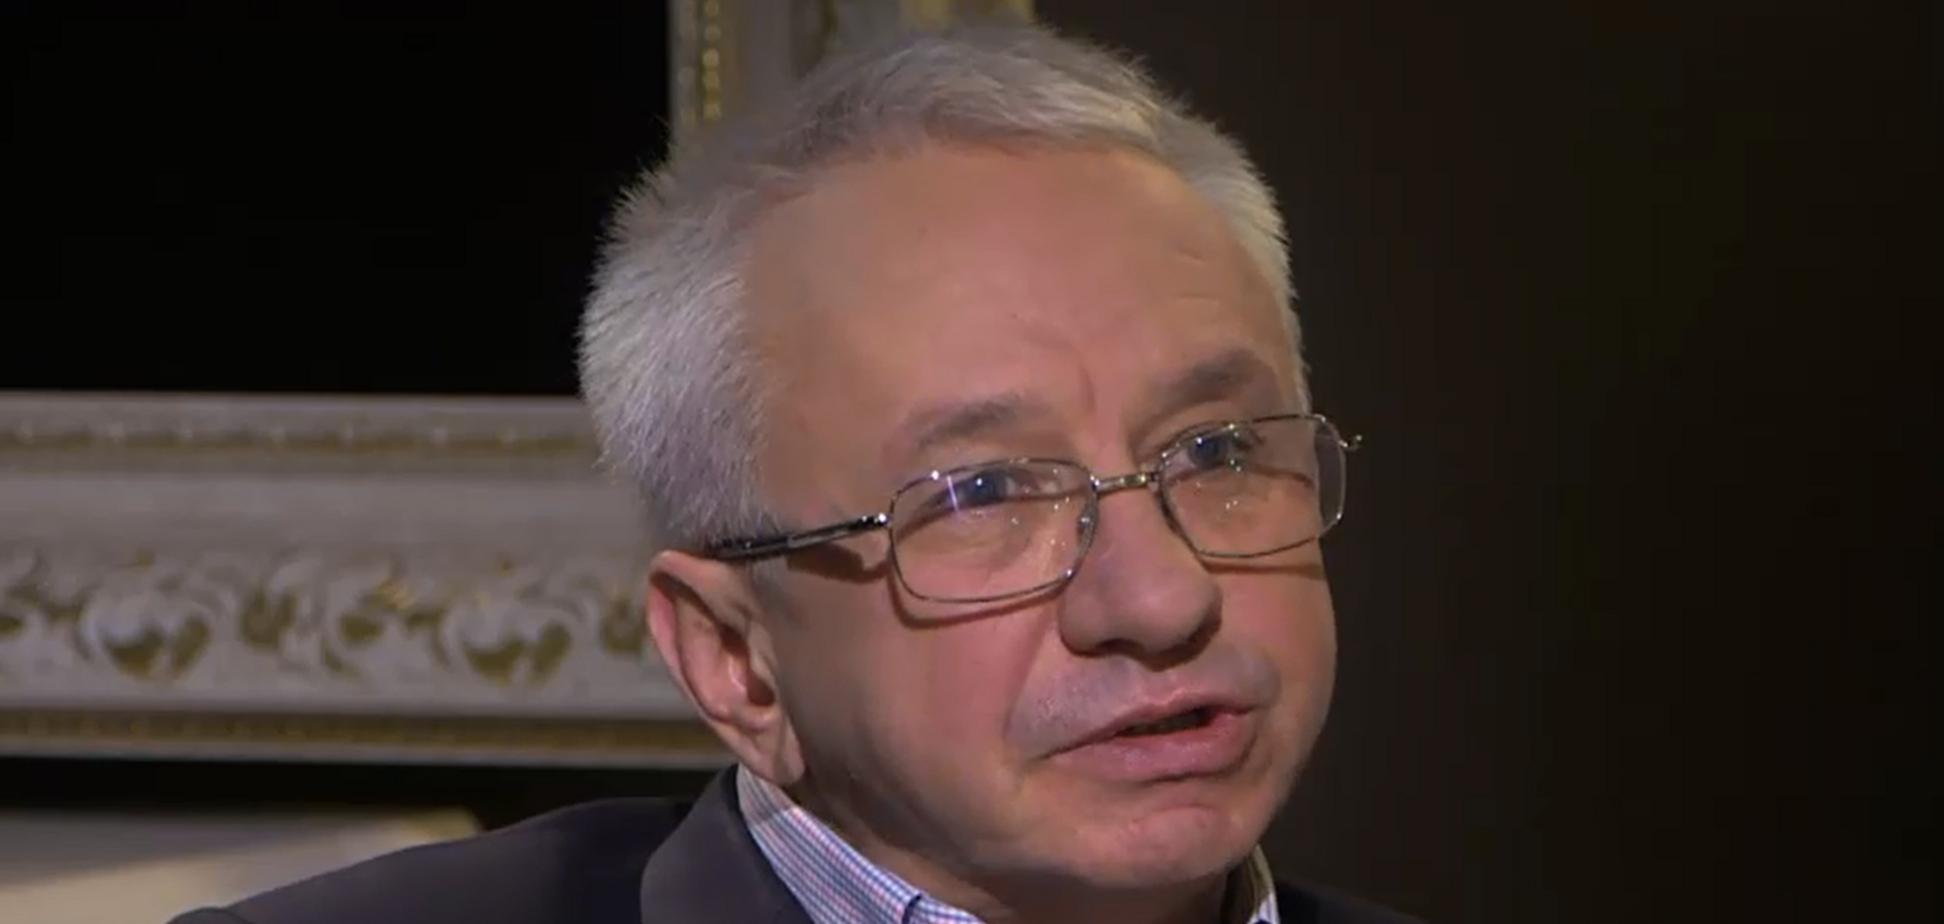 Кучеренко - единственный профессиональный кандидат на должность мэра Киева, считает эксперт